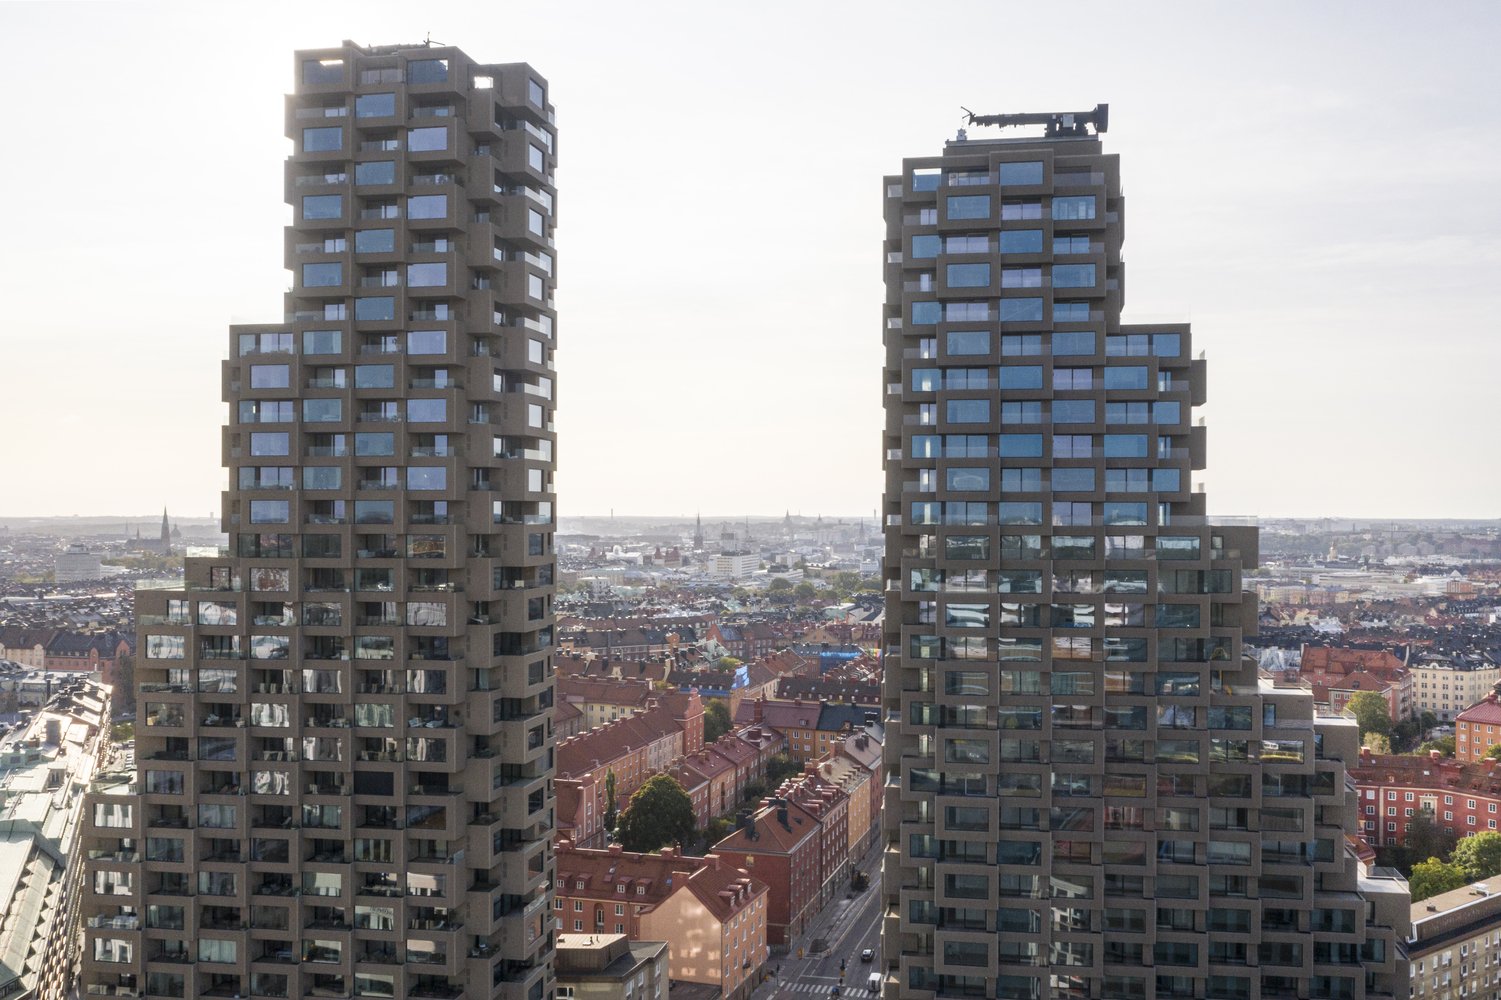 Лучшим небоскребом в мире признан жилой комплекс из модульных кубиков в Стокгольме (фото)